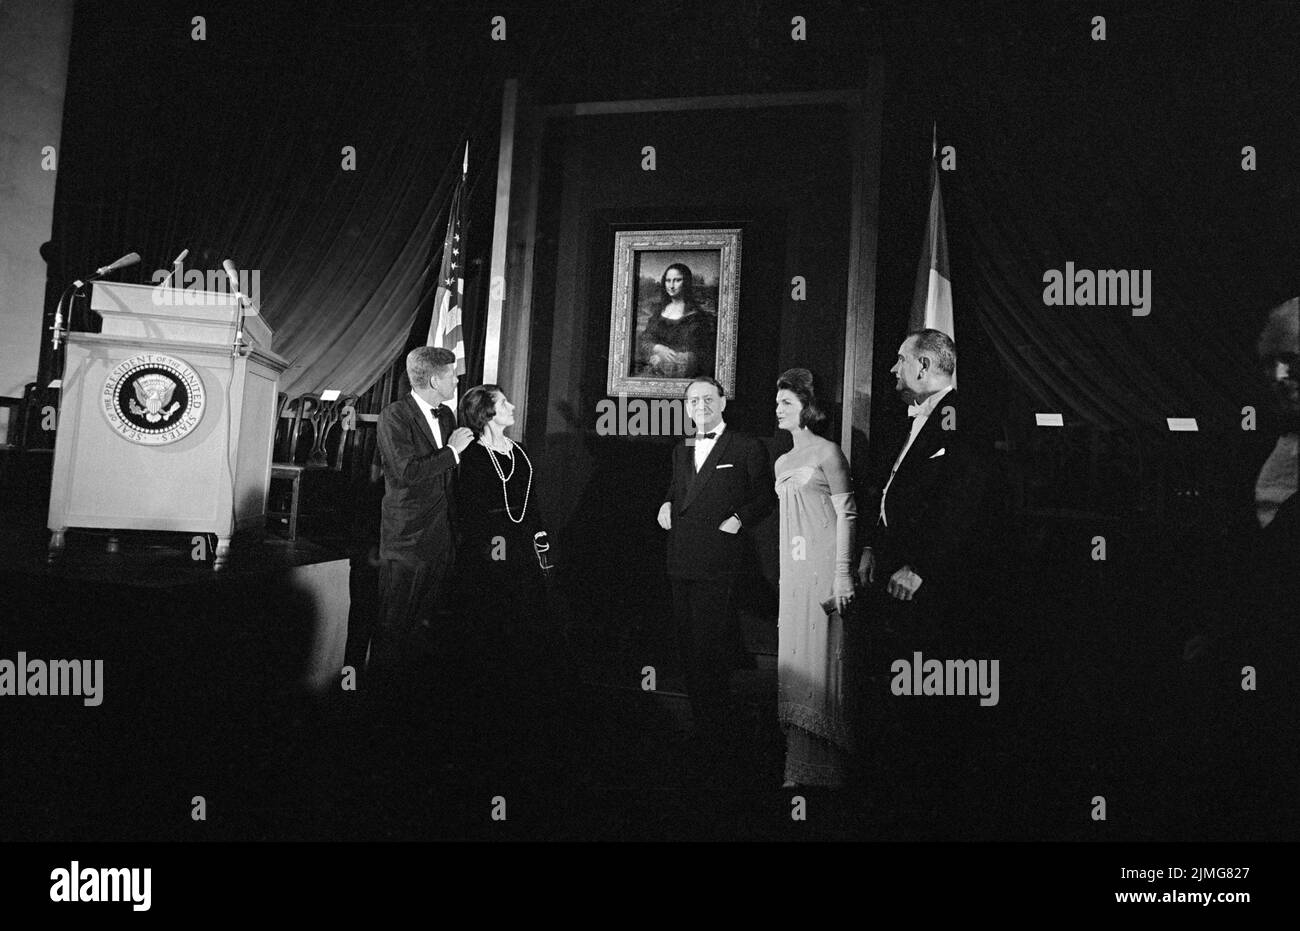 John Kennedy, président des États-Unis, Jacqueline Kennedy, première dame des États-Unis, Lyndon B. Johnson, vice-président des États-Unis et d'autres personnes qui regardent Mona Lisa, National Gallery of Art, Washington, D.C., États-Unis, Marion S. Trikosko, Collection de photographies du magazine US News & World Report, 8 janvier 1963 Banque D'Images